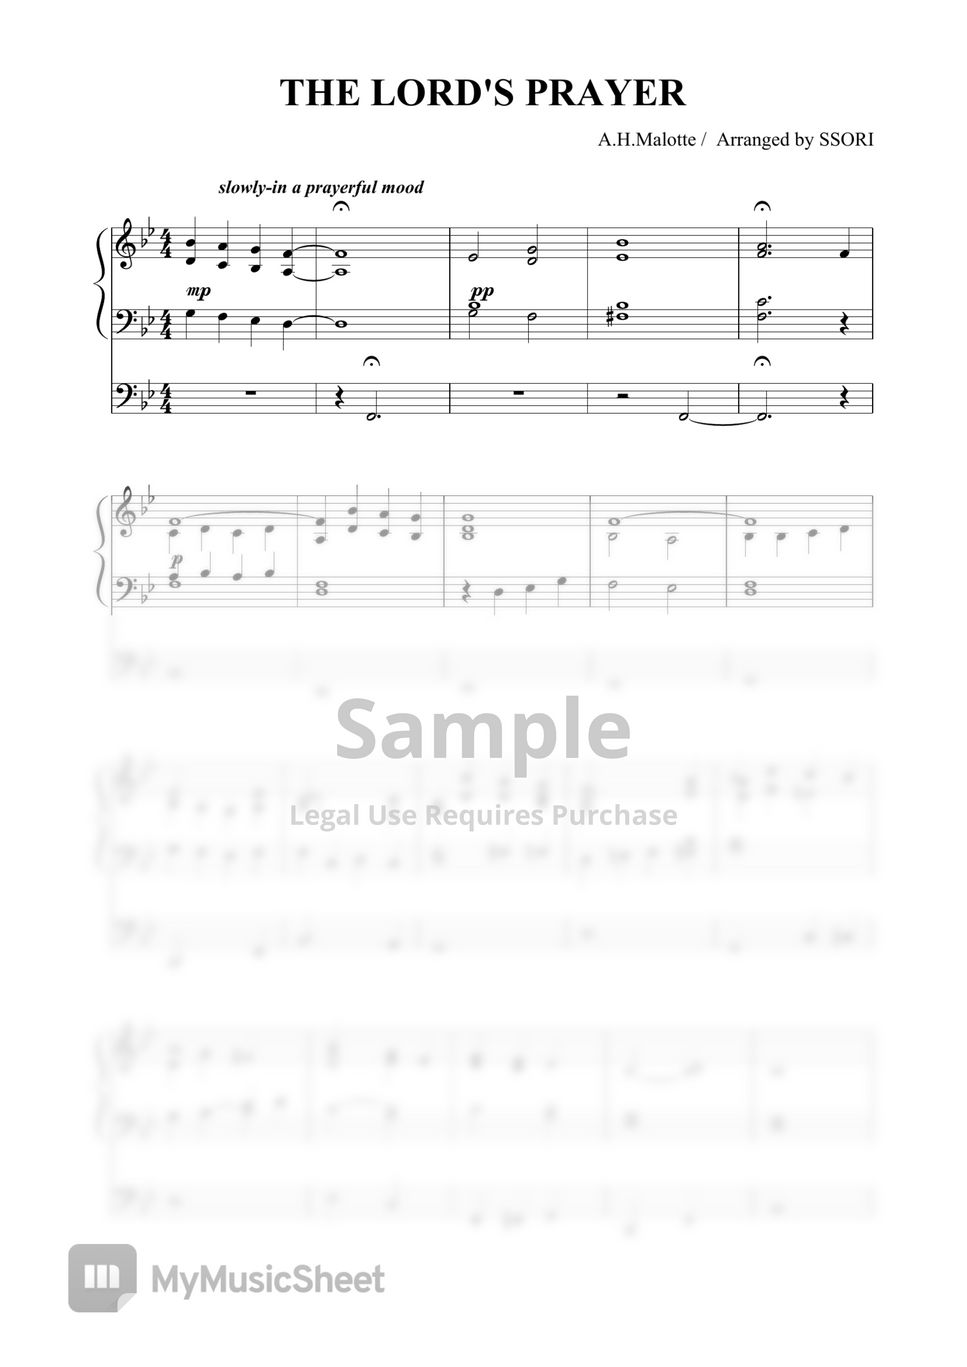 A.H.Malotte - 주기도문송  The Lord's Prayer (organ prelude 오르간연주곡,전주곡) by SSORI